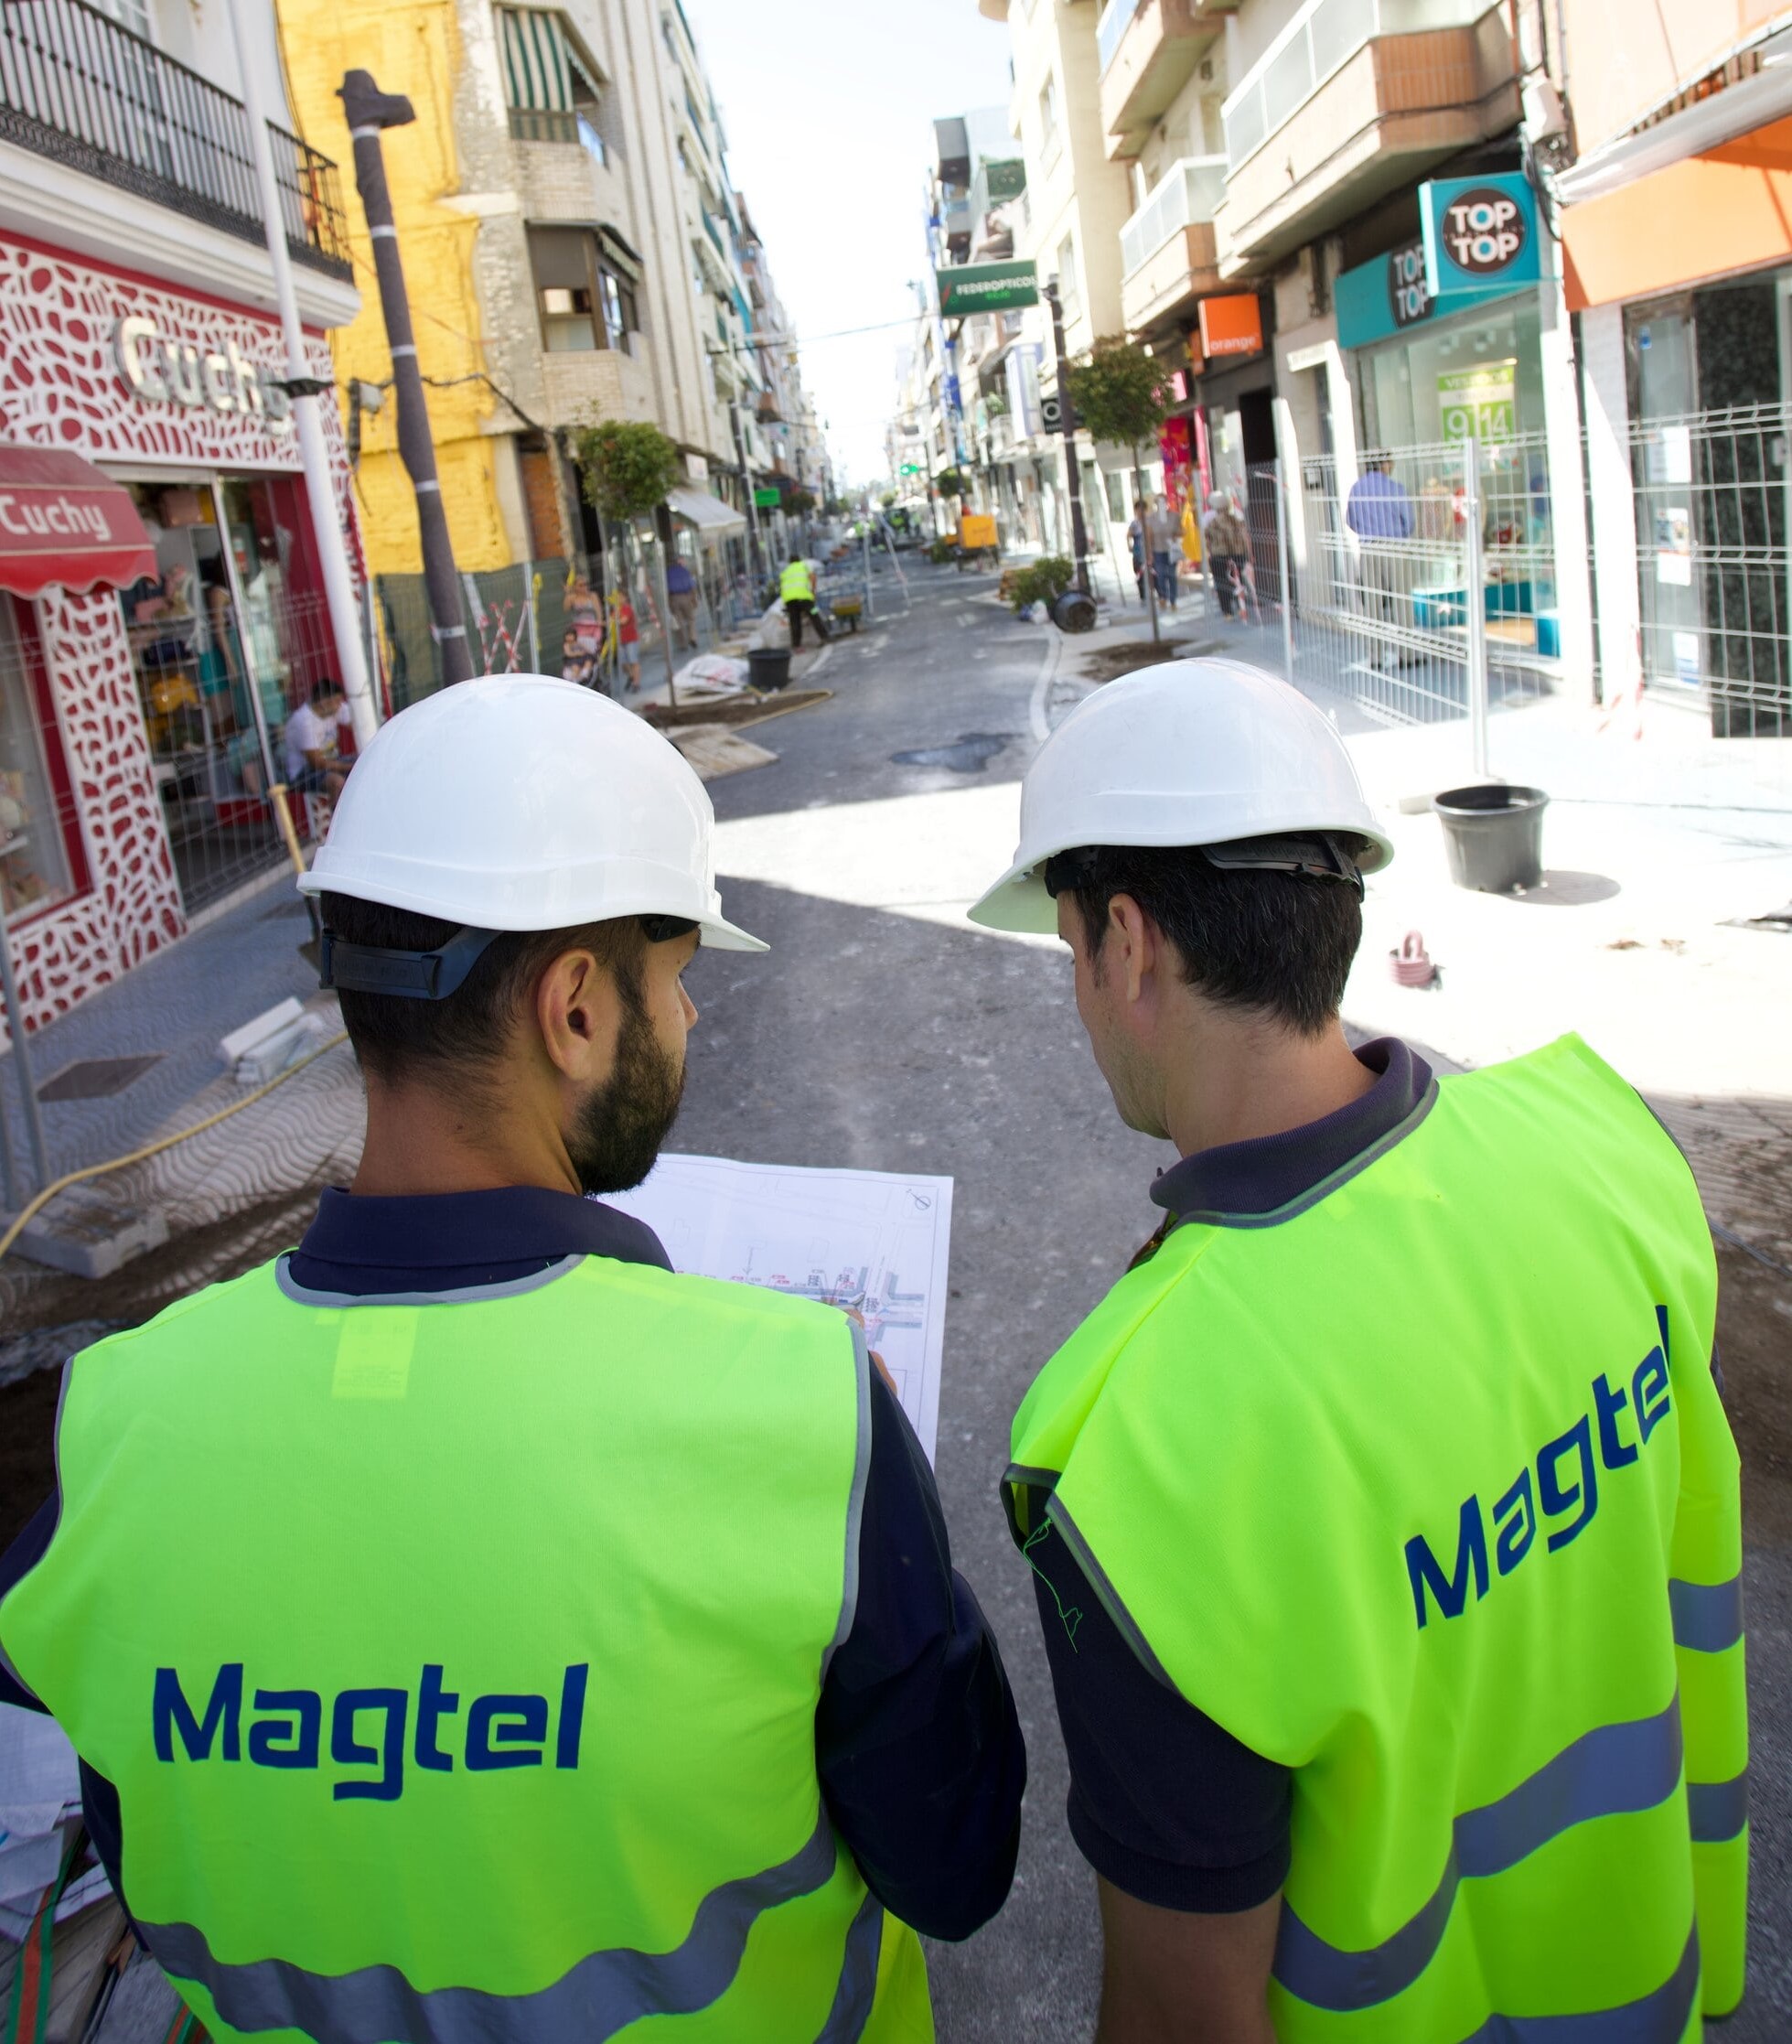 Magtel inicia las obras de regeneración urbana en la barriada de San Francisco de Palma del Río